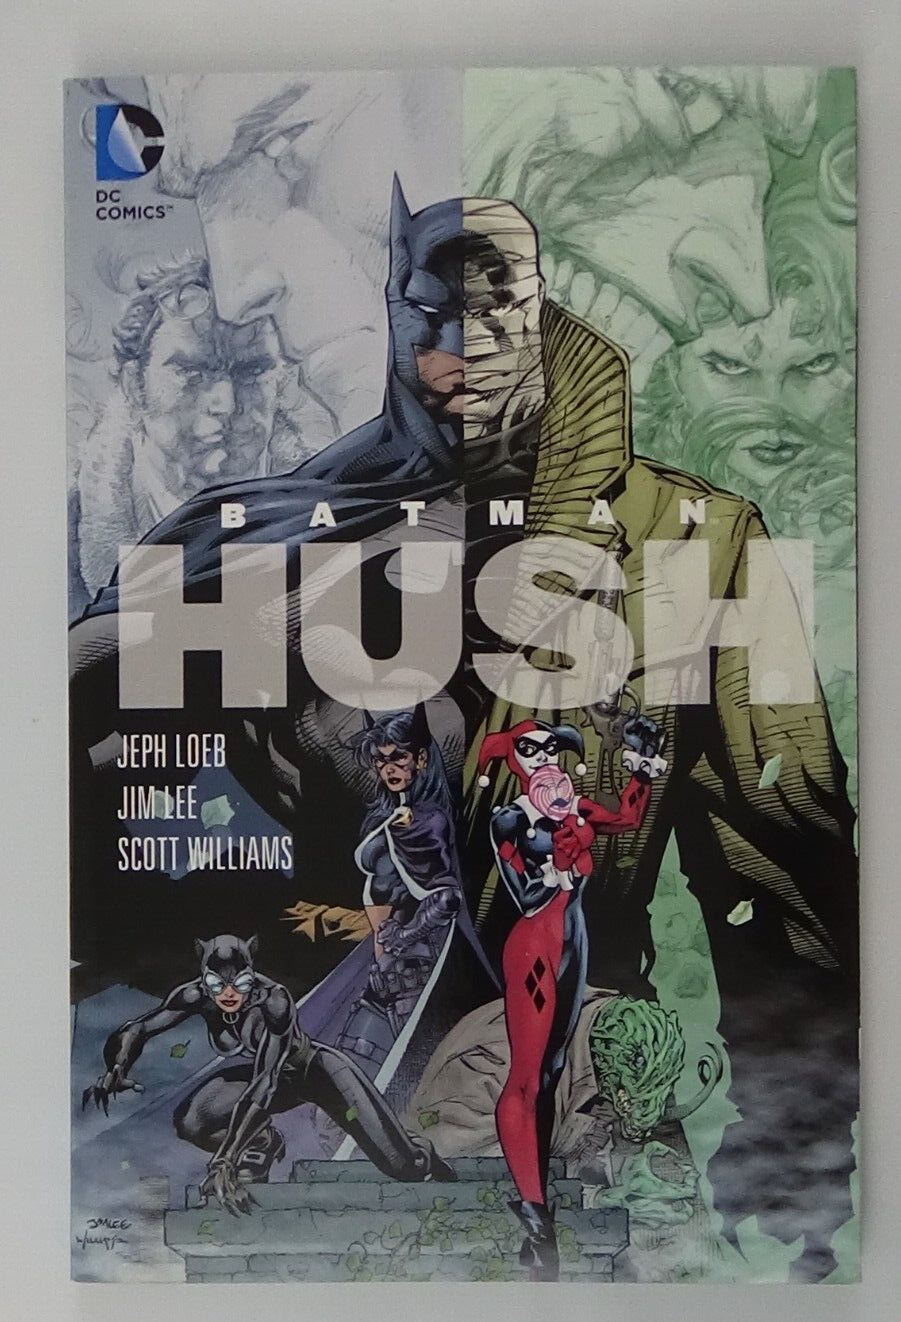 Batman: HUSH (DC Comics October 2009) Paperback #02